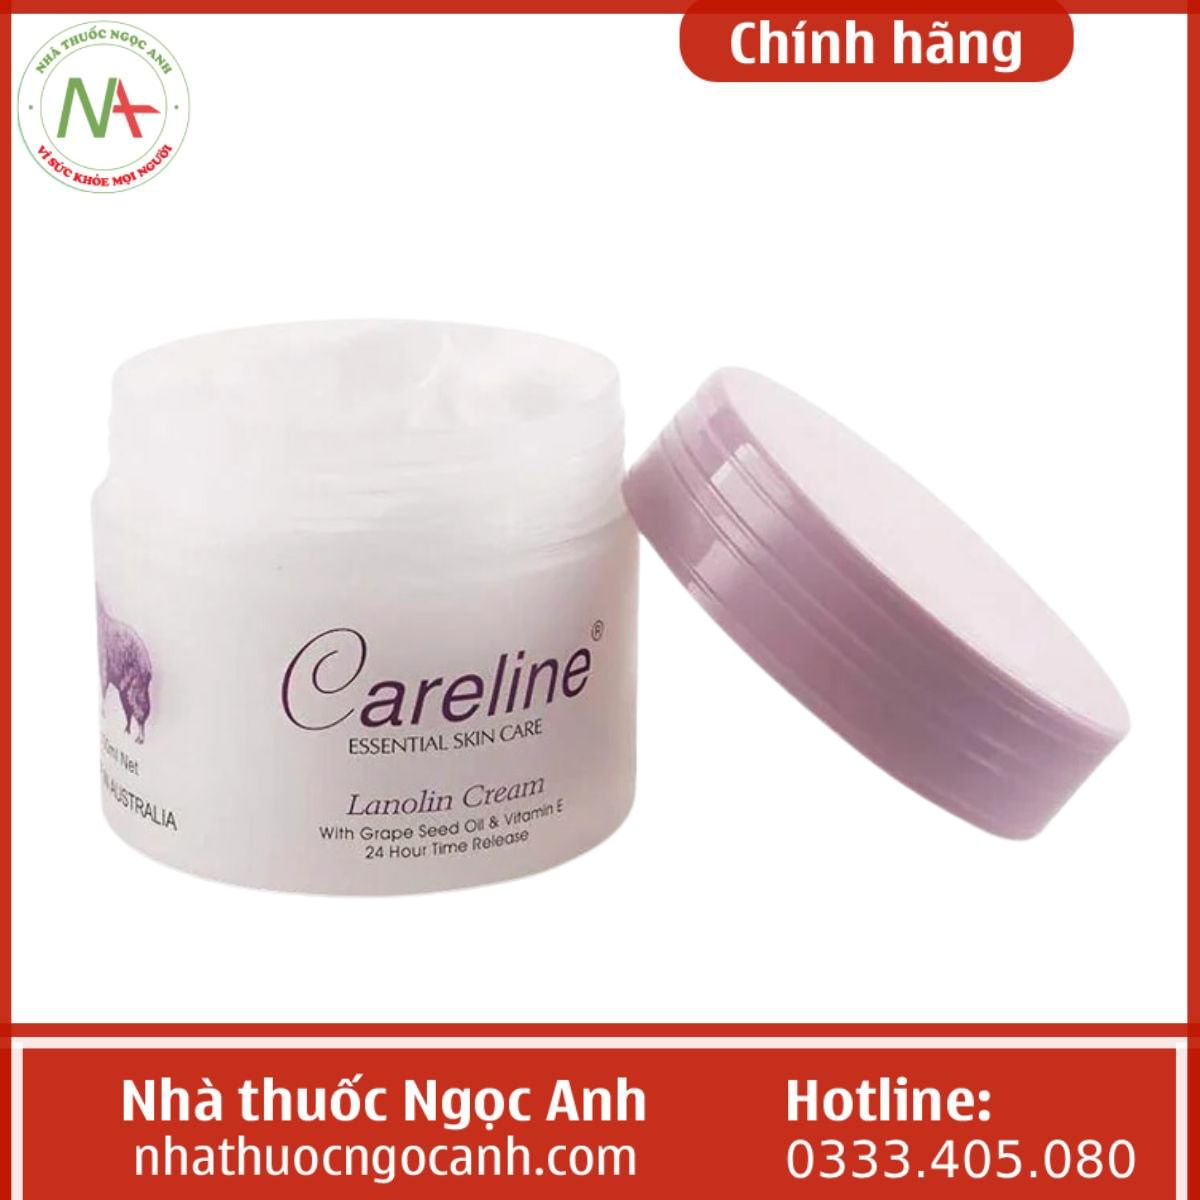 Careline Essential Skin Care (Tím) kem dưỡng da nhau thai cừu